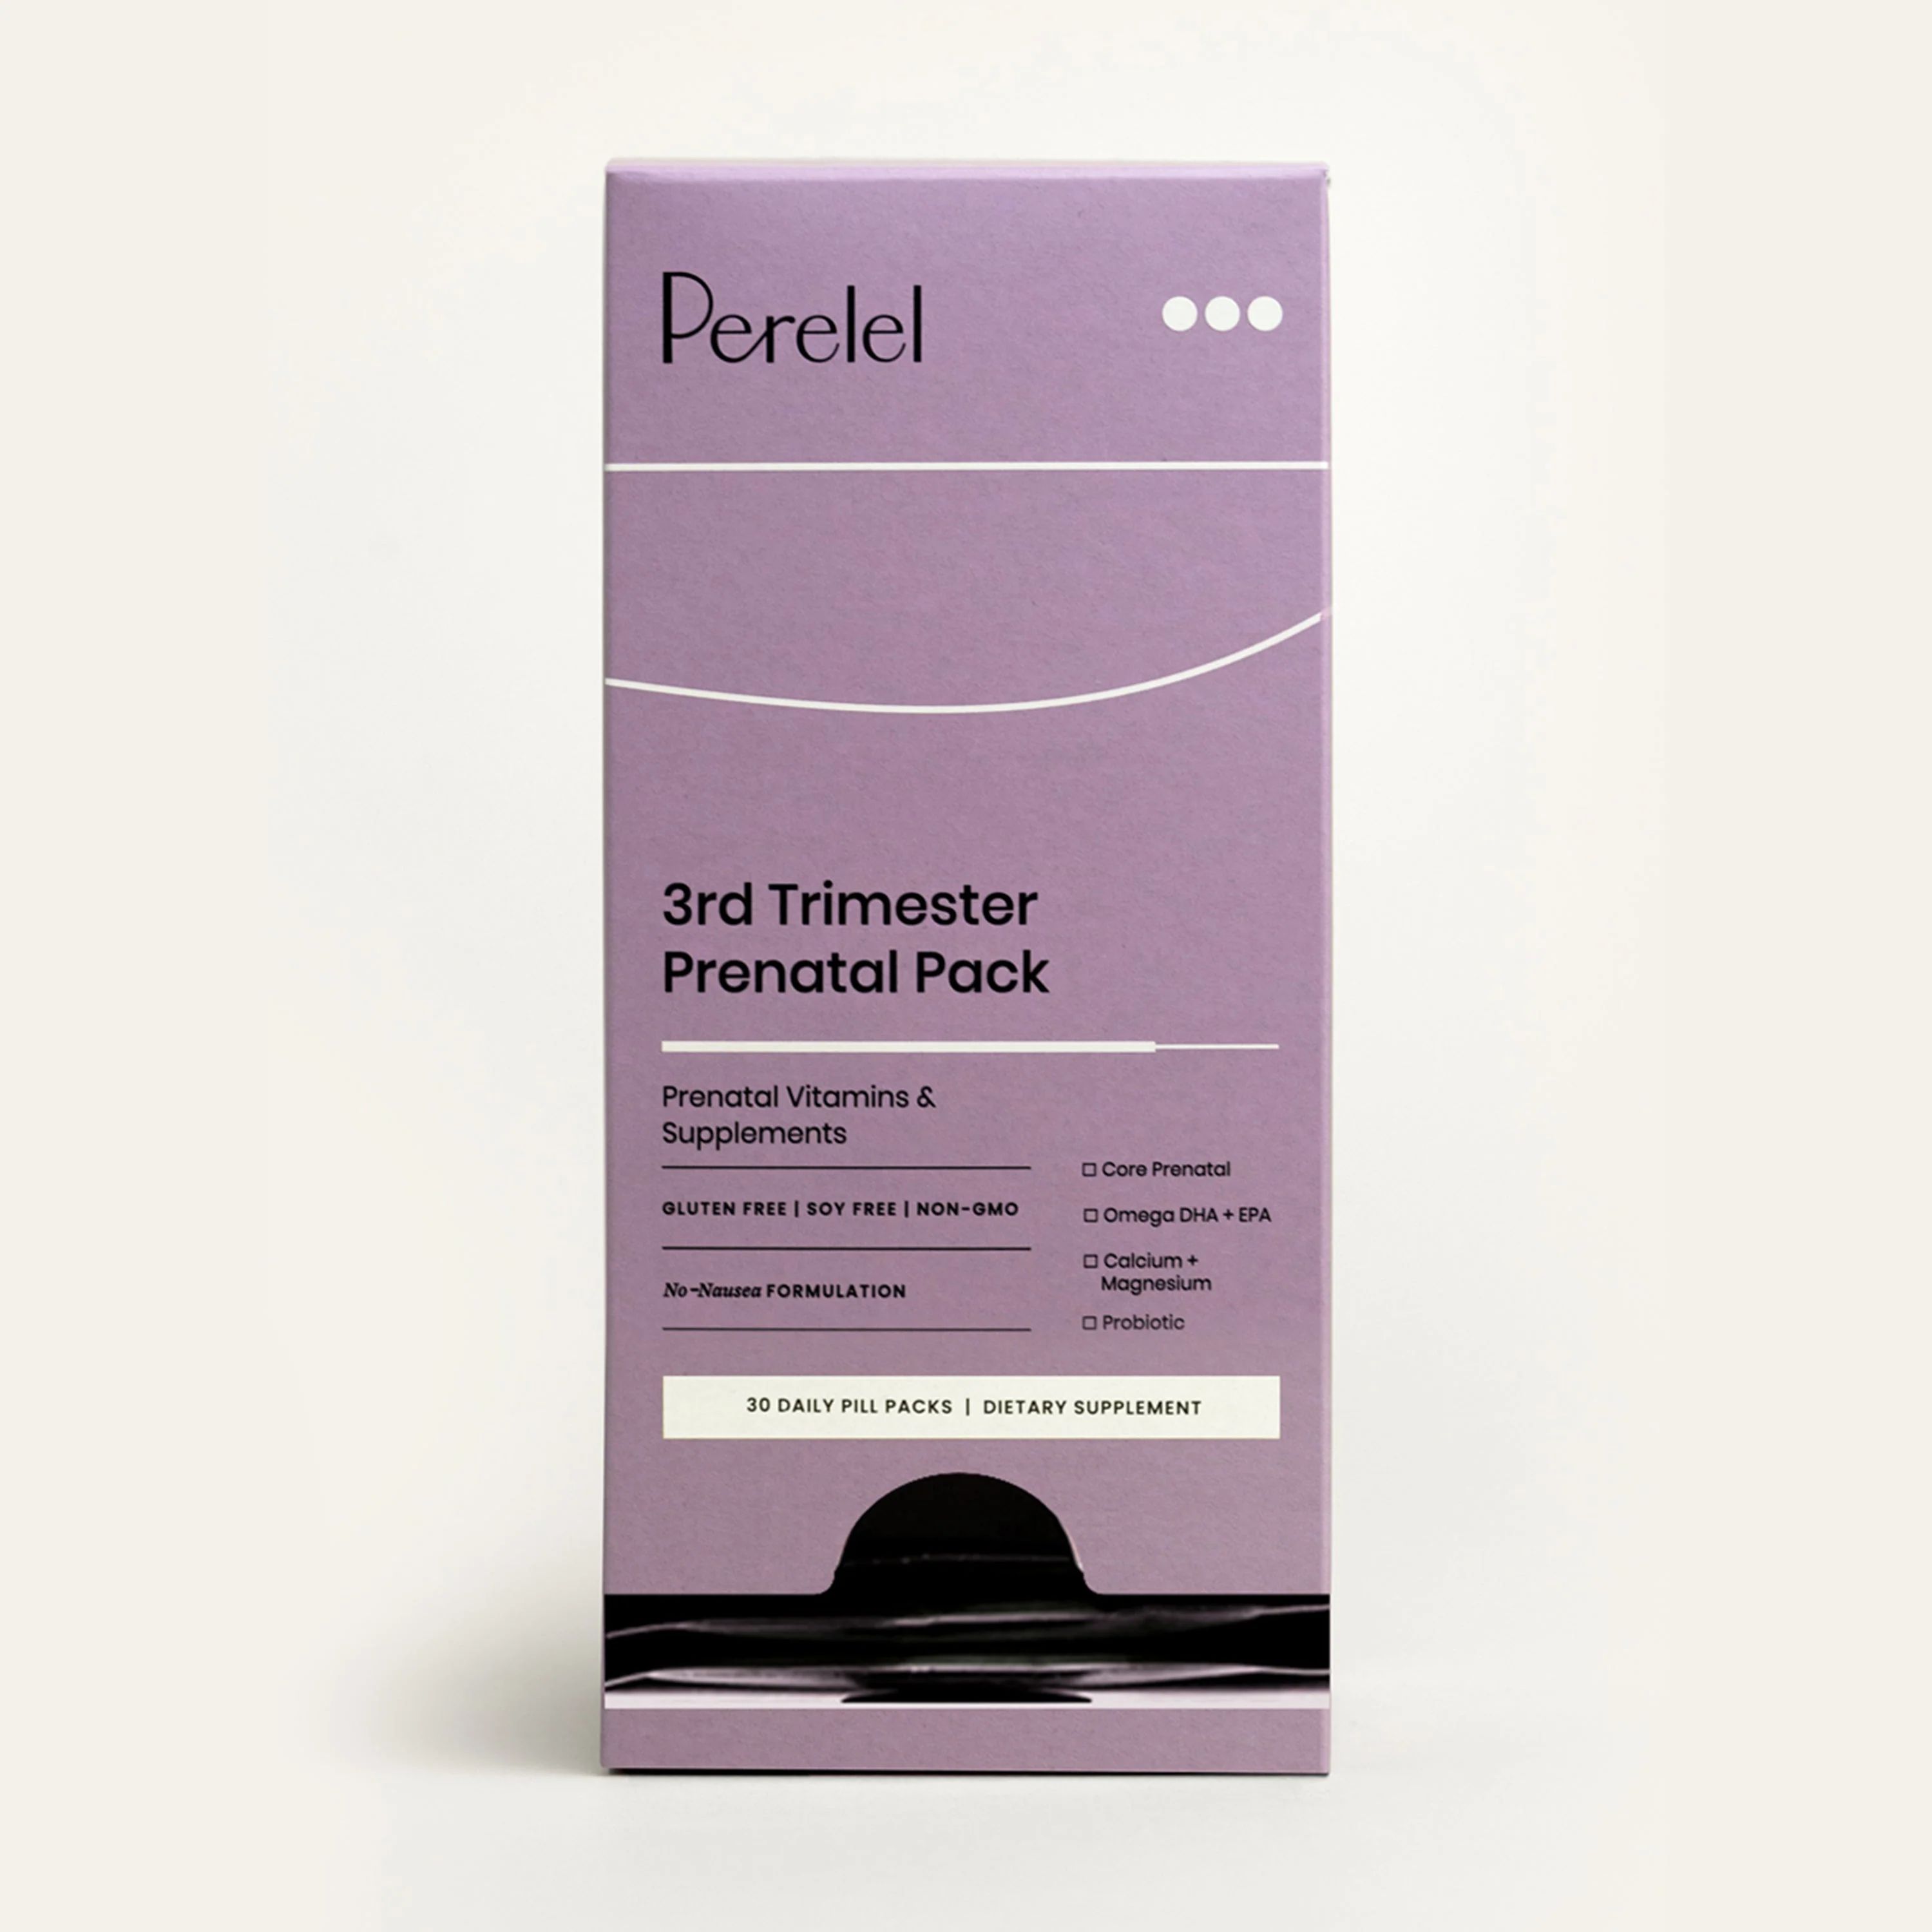 Third Trimester Prenatal Vitamin Pack | Perelel